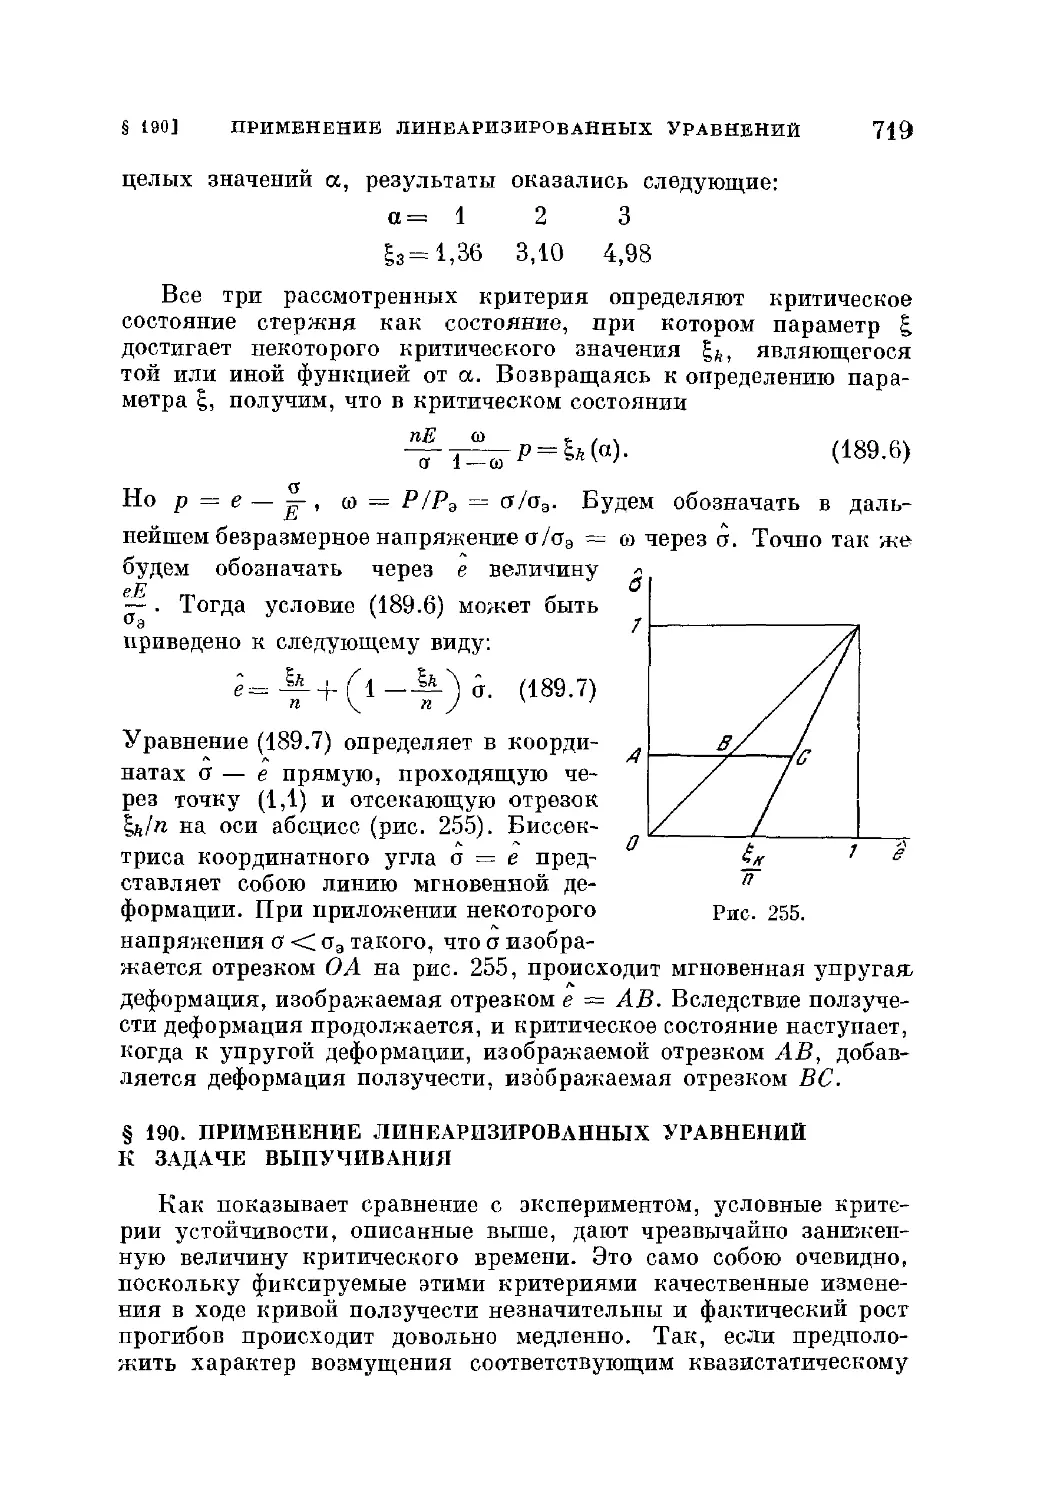 § 190. Применение линеаризированных уравнений к задаче выпучивания